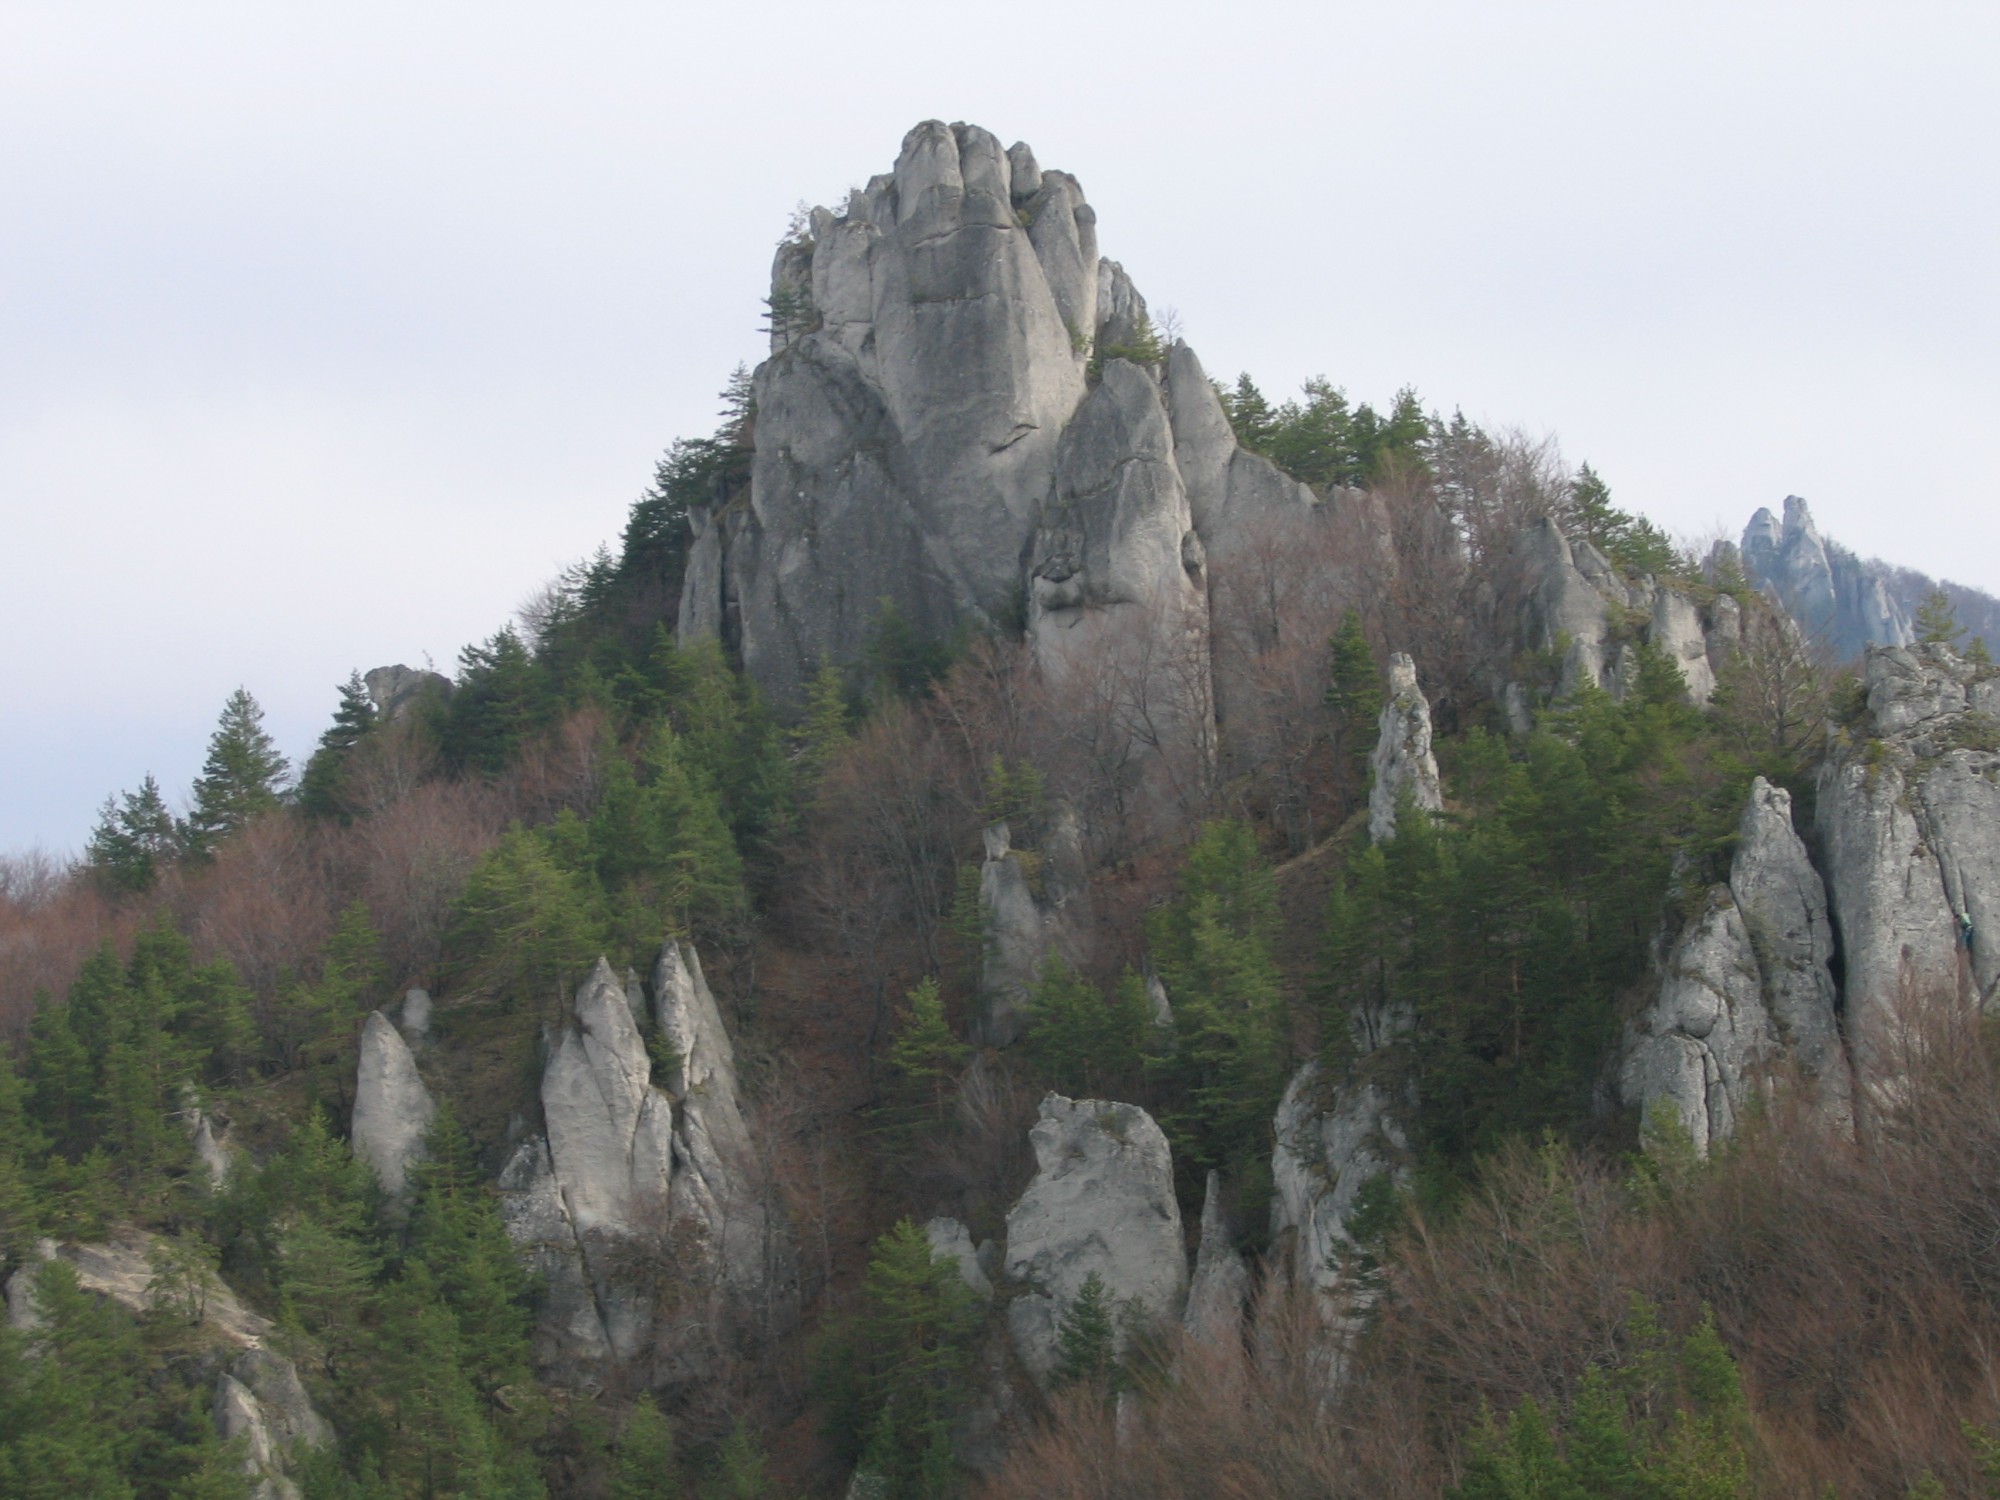 Sulovske skaly, fot. Juloml, CC BY-SA 3.0 via Wikimedia Commons